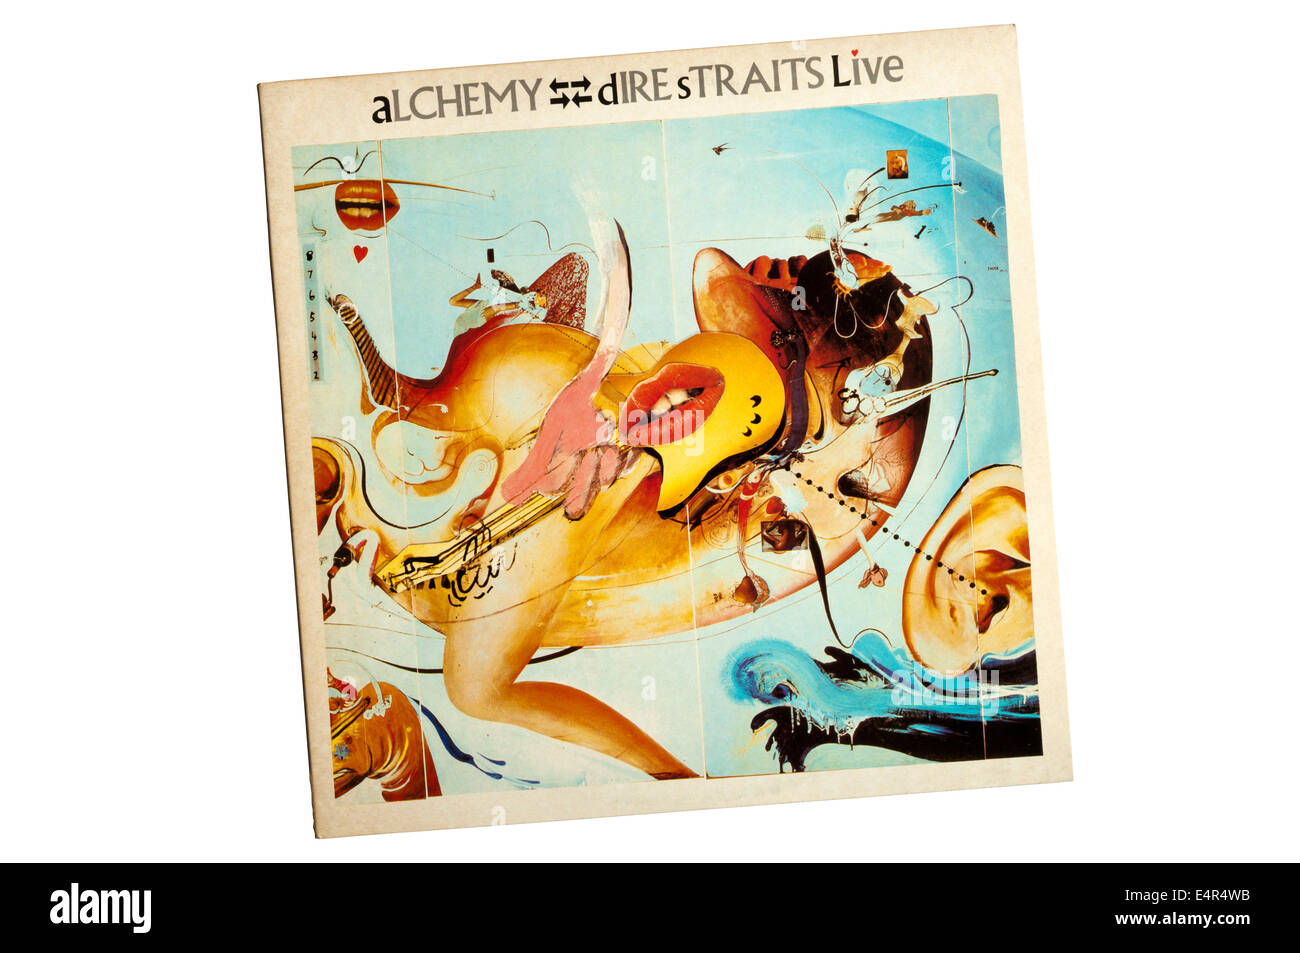 Alchimia: Dire Straits Live è un doppio album dal British rock band Dire Straits, rilasciato nel 1984. La banda del primo album dal vivo. Foto Stock